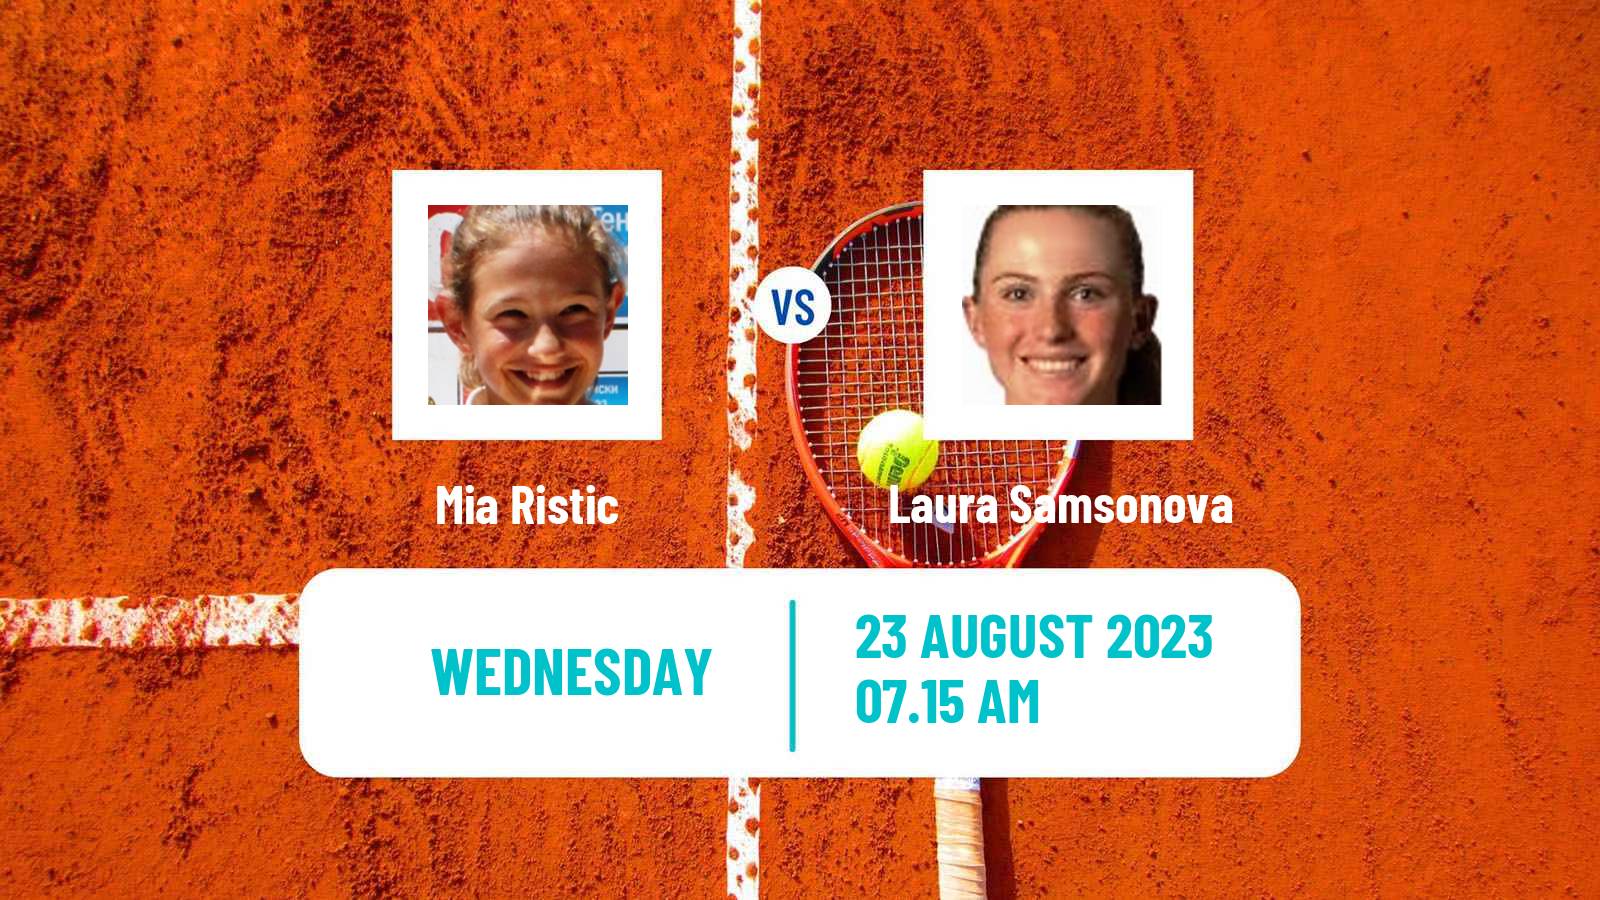 Tennis ITF W60 Prerov Women Mia Ristic - Laura Samsonova